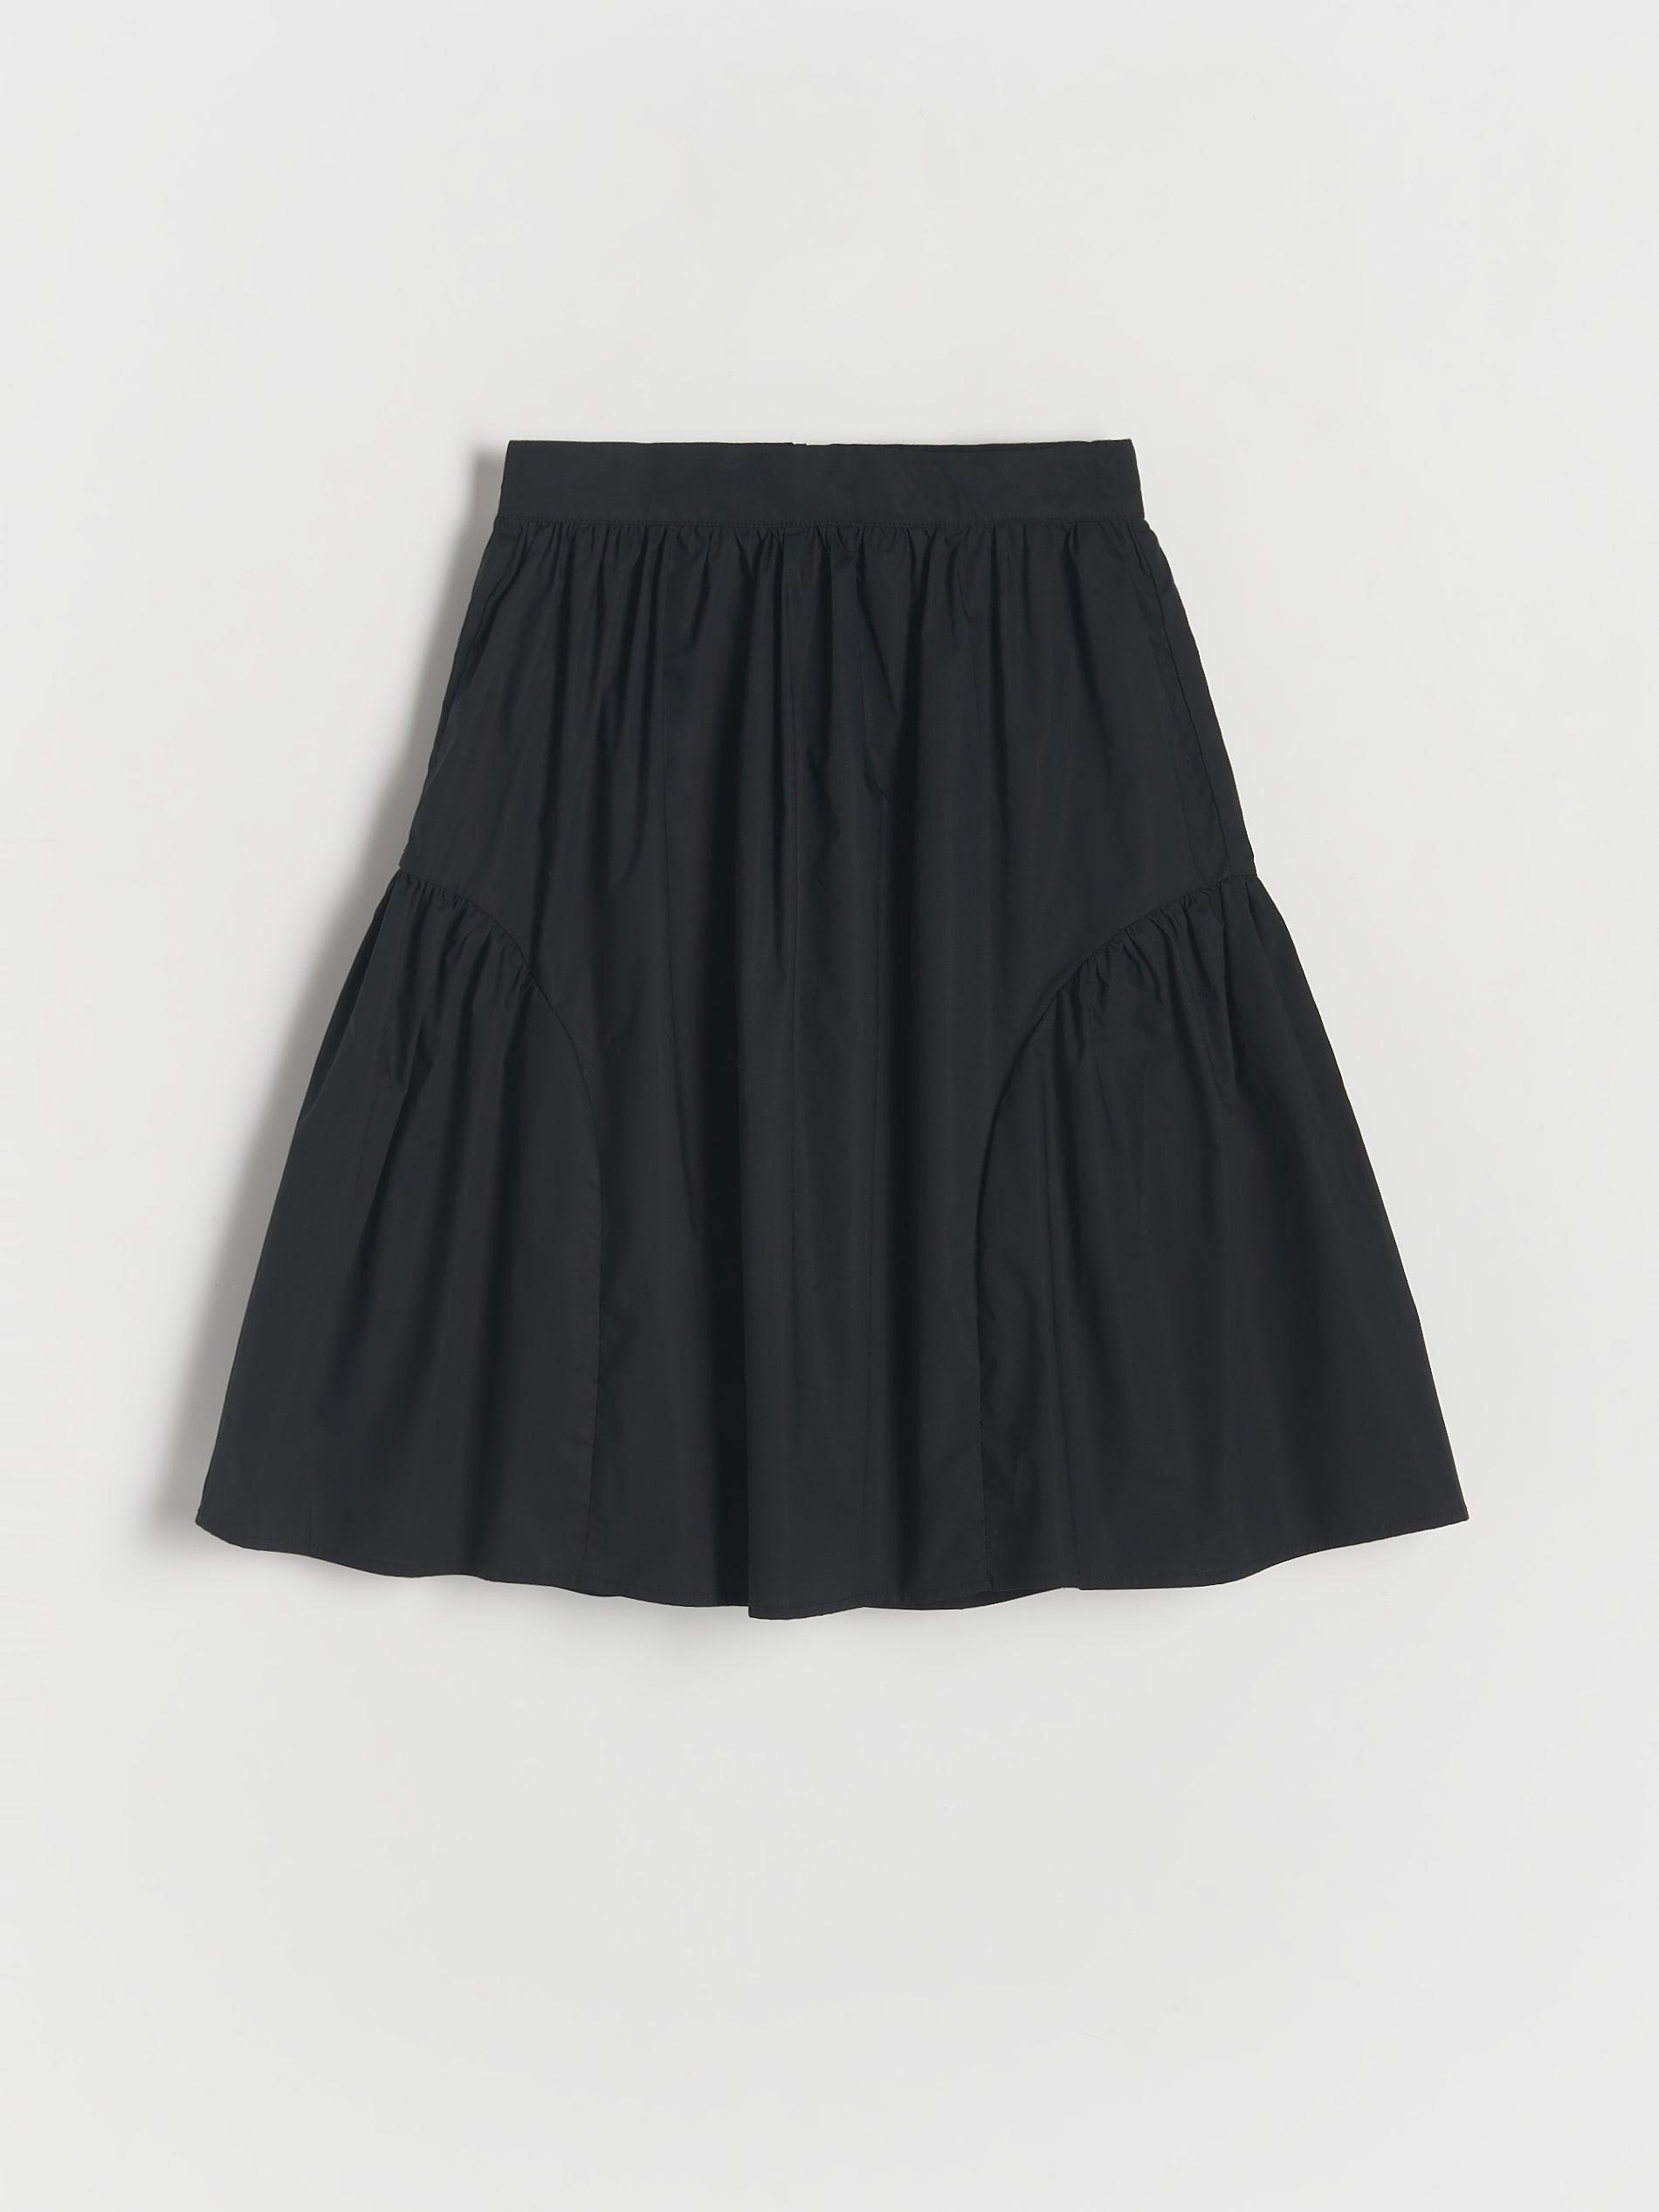 Reserved - Black Cotton Skirt, Kids Girls